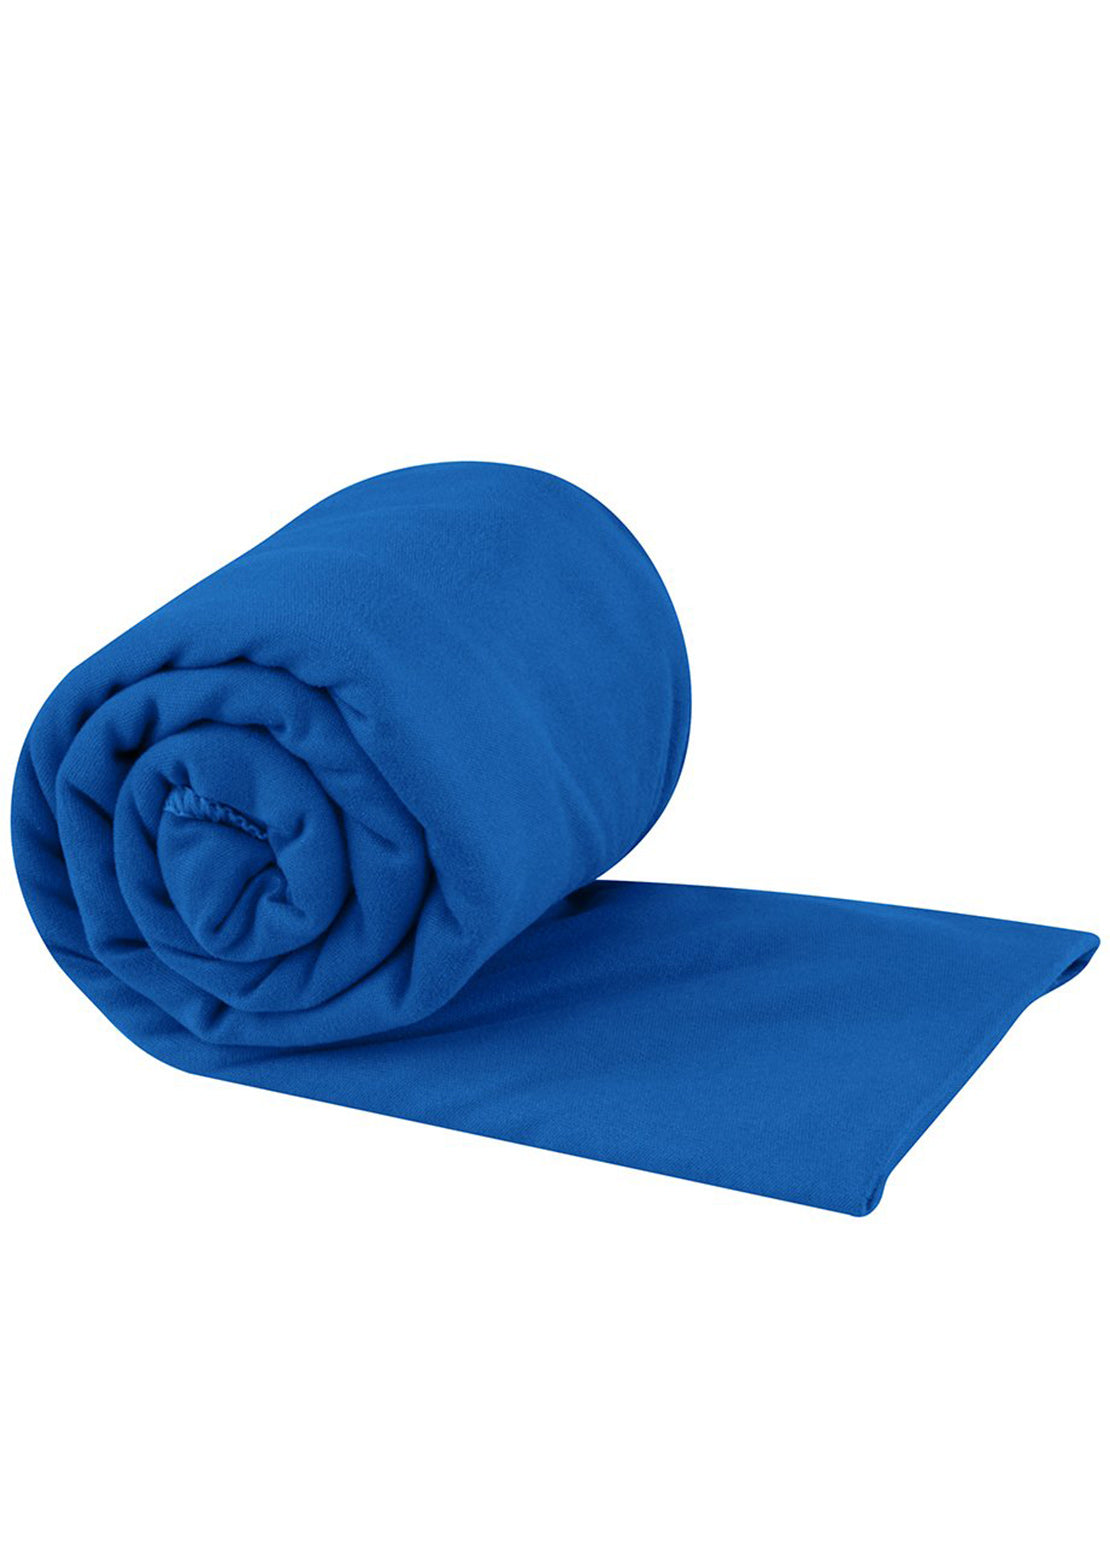 Sea To Summit Pocket Towel - Medium Cobalt Blue